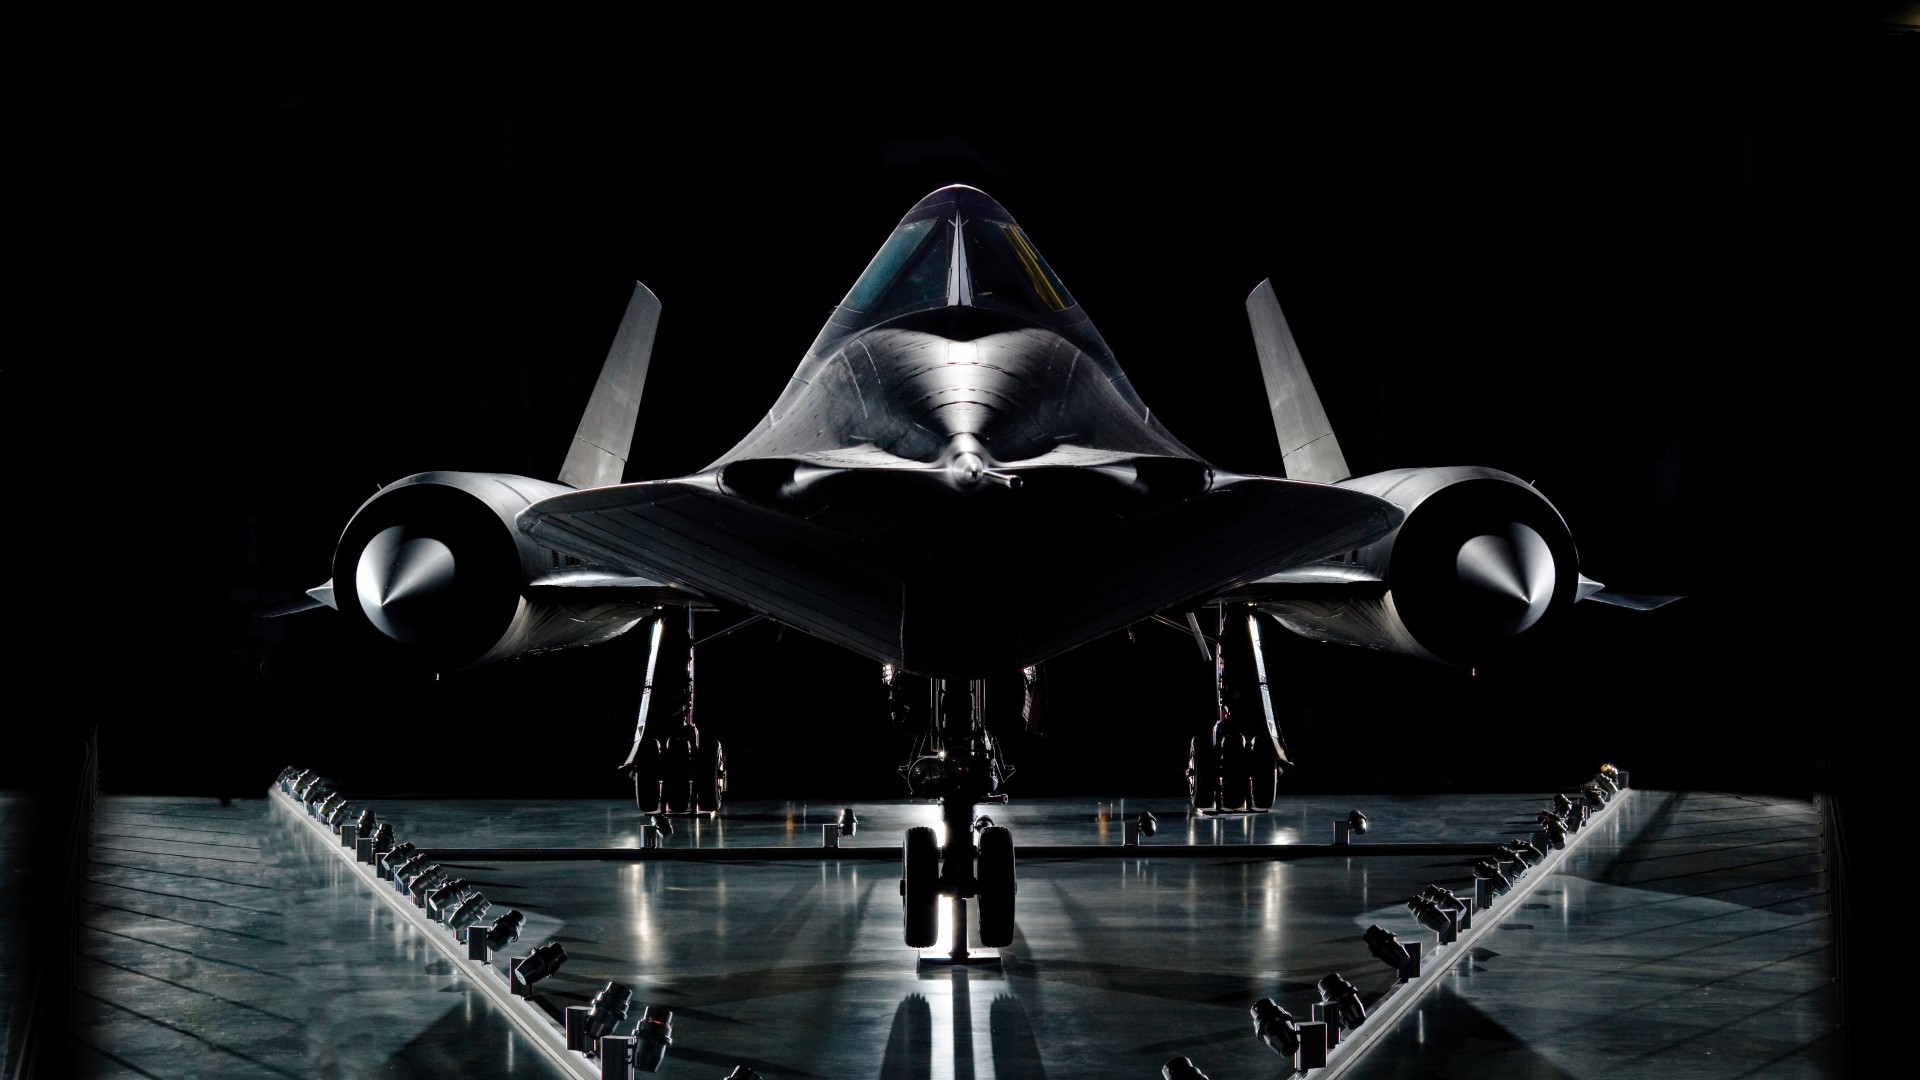 сверхзвуковой, разведчик, SR-71, Lockheed, Blackbird, jet, plane, aircraft, presentation, U.S. Air Force (horizontal)